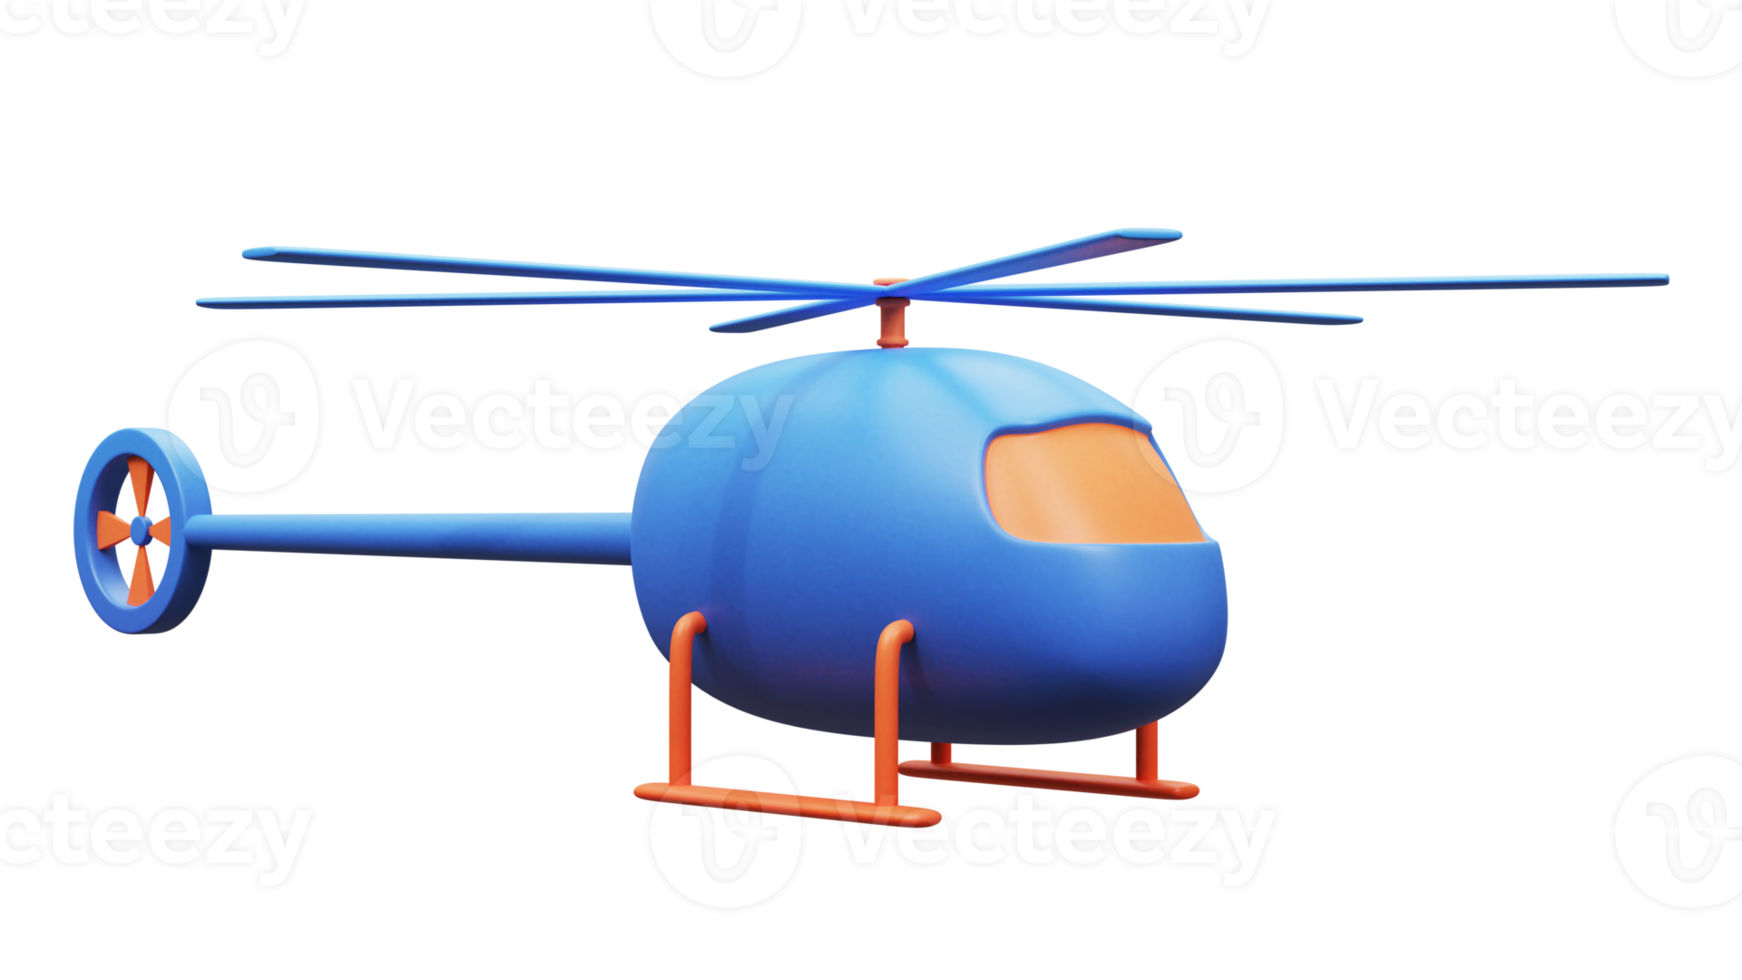 Rendu 3D d'hélicoptère png